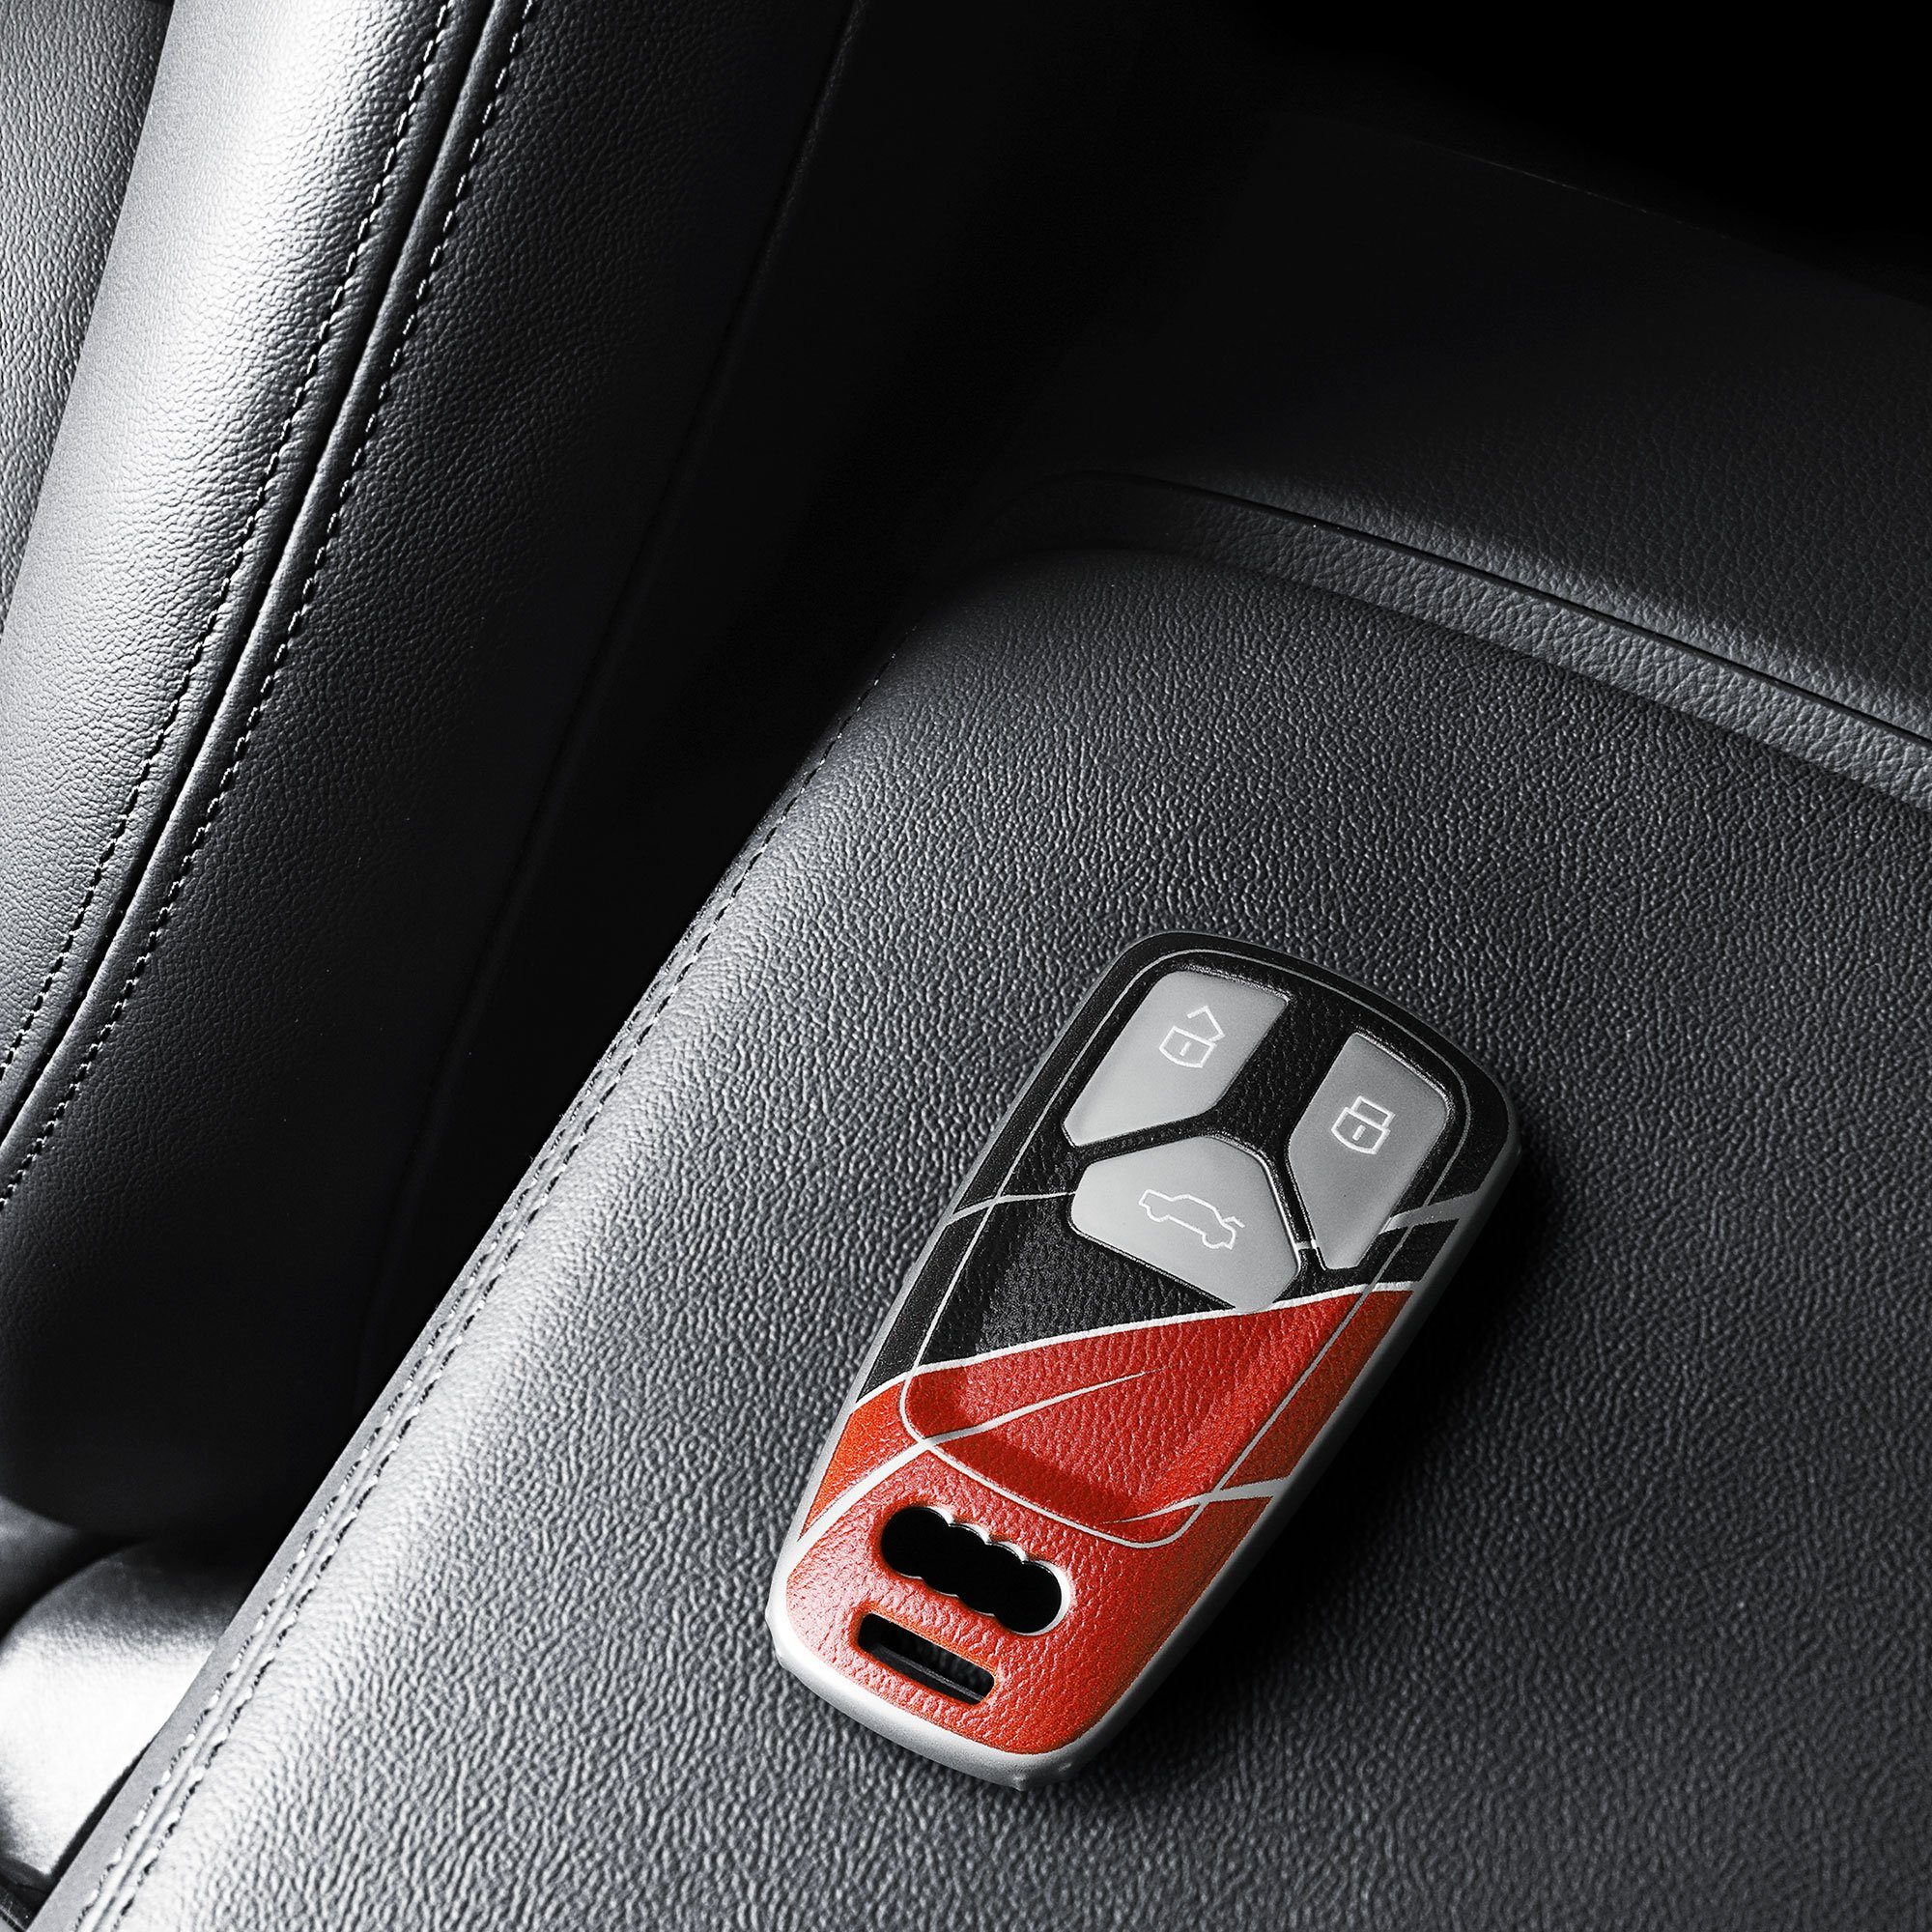 Schutzhülle Schlüsselhülle Schlüsseltasche kwmobile TPU für Cover Audi, Audi Autoschlüssel für Hülle